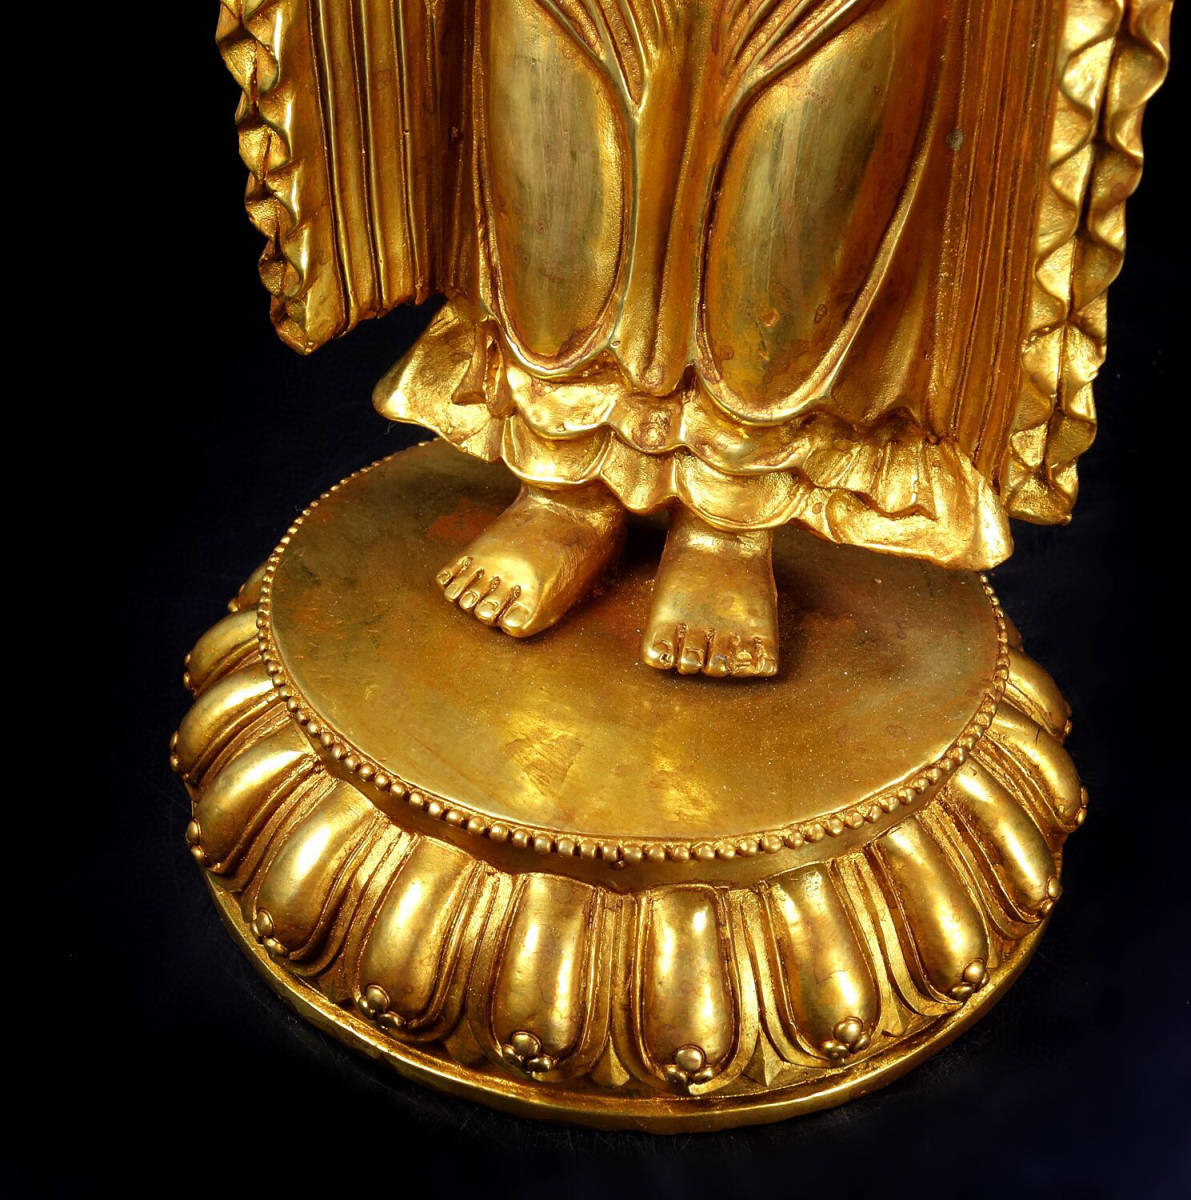 館蔵珍品 銅製 塗金 觀音度母像置物 賞物 貴重物品 収蔵品 中国古